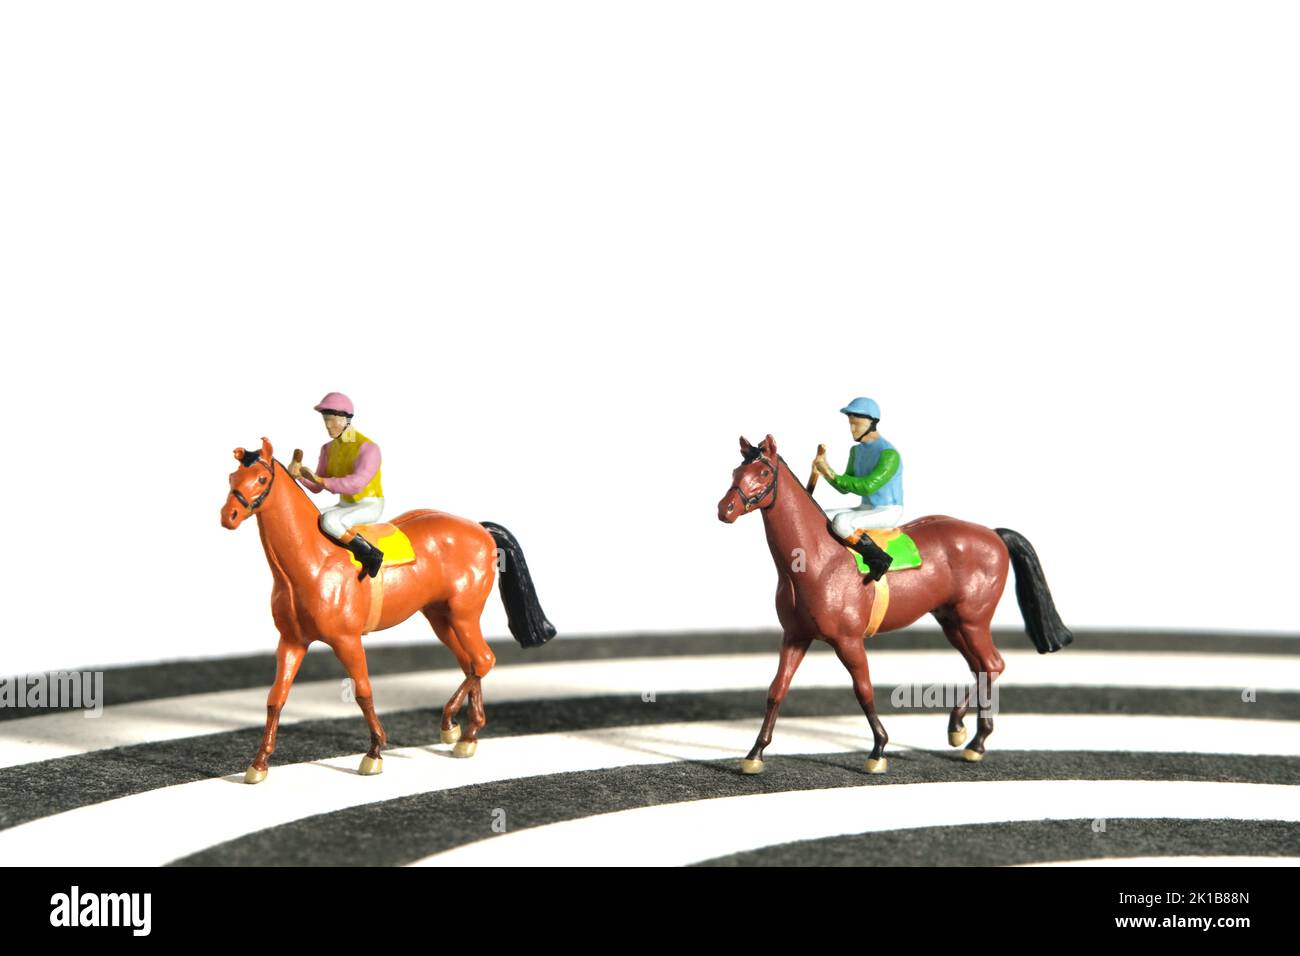 Photographie miniature de personnage de jouet de personnes. Des hommes jockey à cheval sur une piste de course depuis un dartboard. Isolé sur fond blanc. Photo d'image Banque D'Images